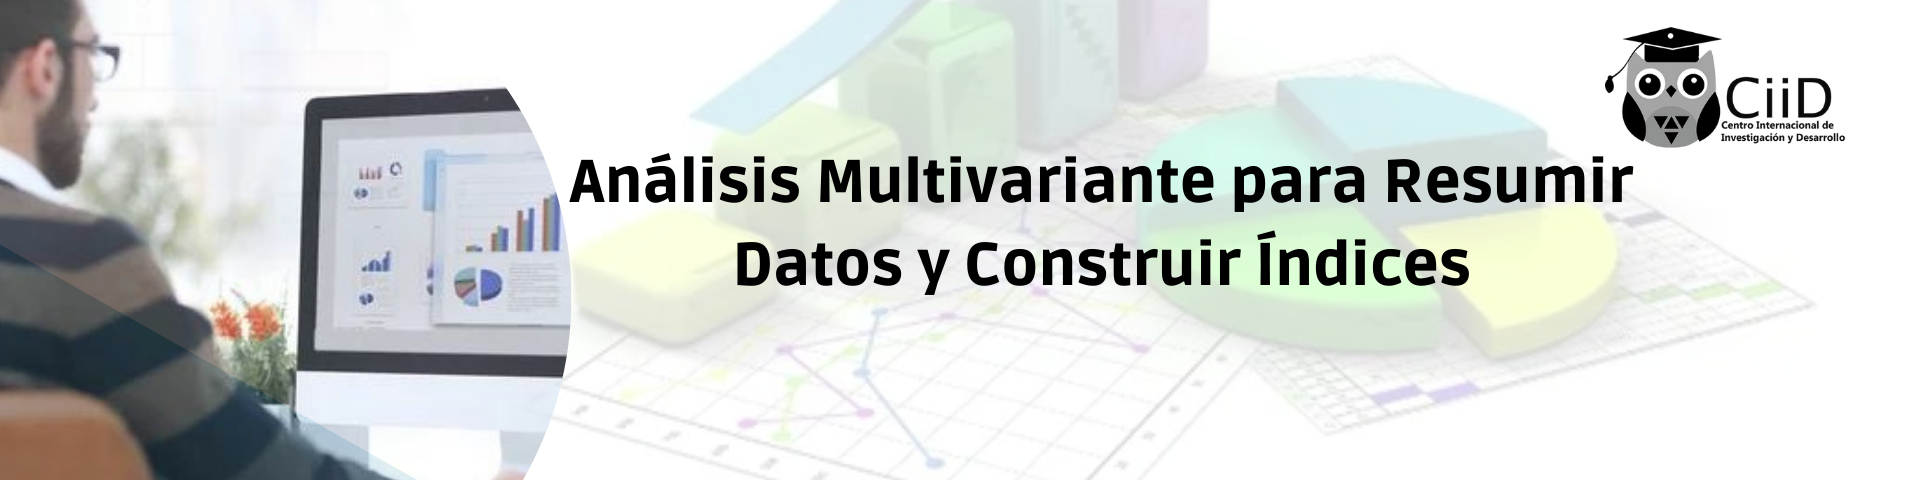 Análisis Multivariante para Resumir Datos y Construir Índices 